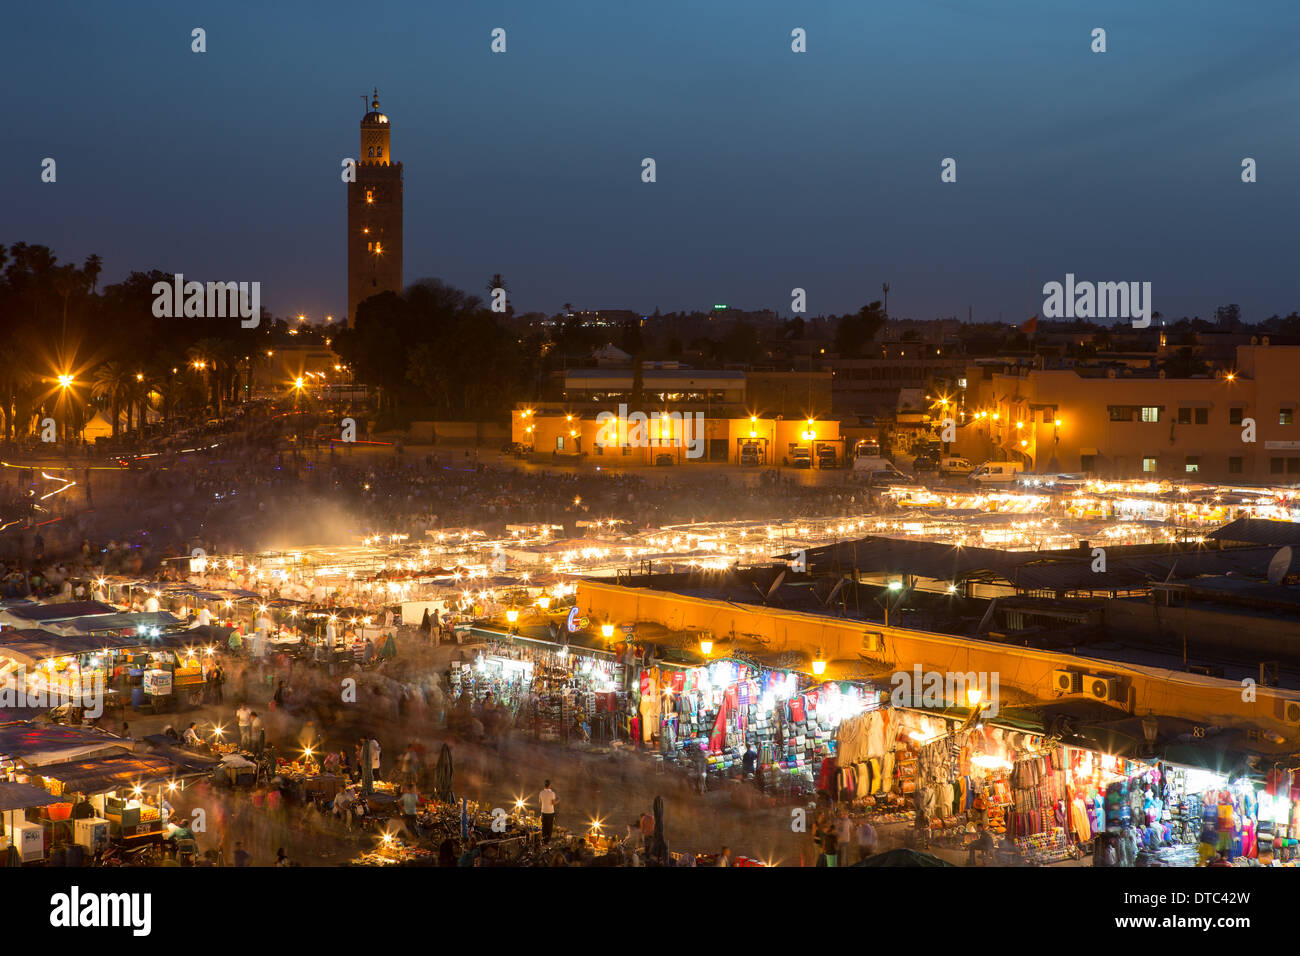 Crepuscolo in Piazza Jemaa El Fnaa, Marrakech, con tutti gli stand gastronomici in pieno funzionamento Foto Stock